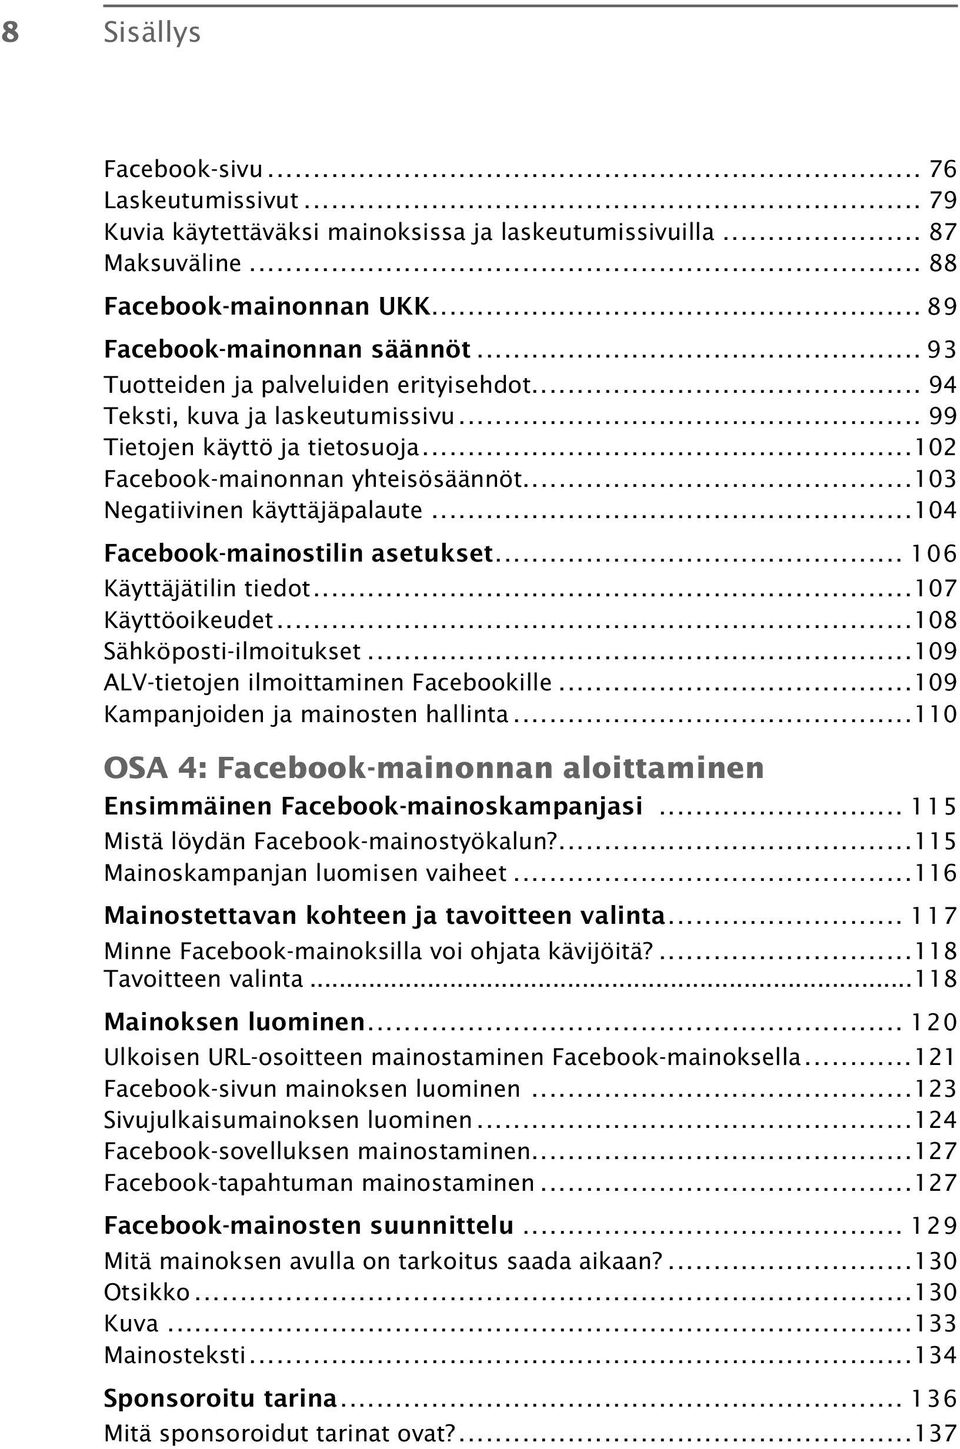 ..104 Facebook-mainostilin asetukset... 106 Käyttäjätilin tiedot...107 Käyttöoikeudet...108 Sähköposti-ilmoitukset...109 ALV-tietojen ilmoittaminen Facebookille...109 Kampanjoiden ja mainosten hallinta.